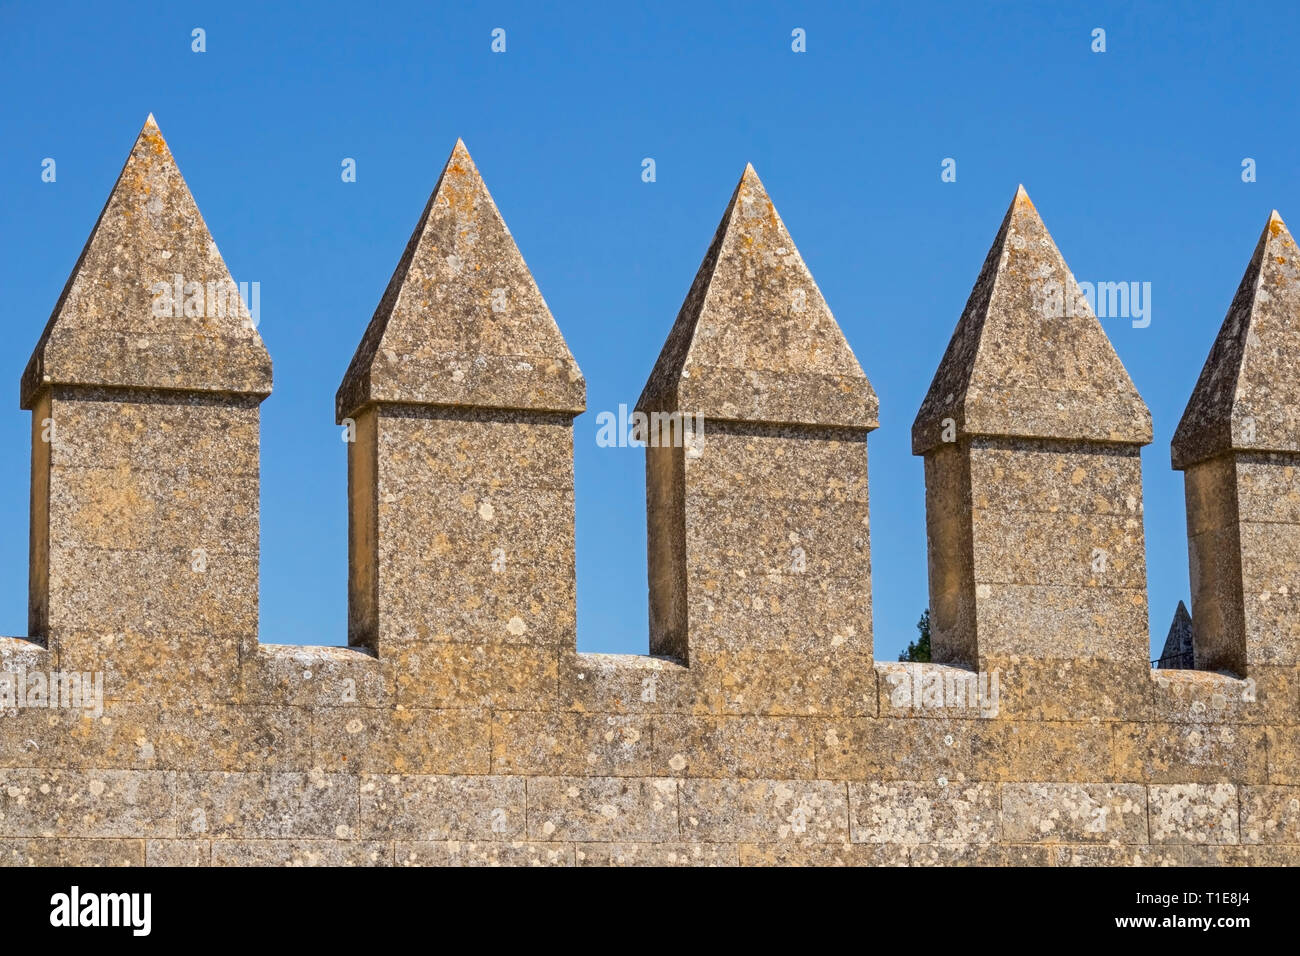 Crenellations on a castle wall.  Almodovar del Rio, Cordoba Province, Spain.  Almodovar castle. Stock Photo